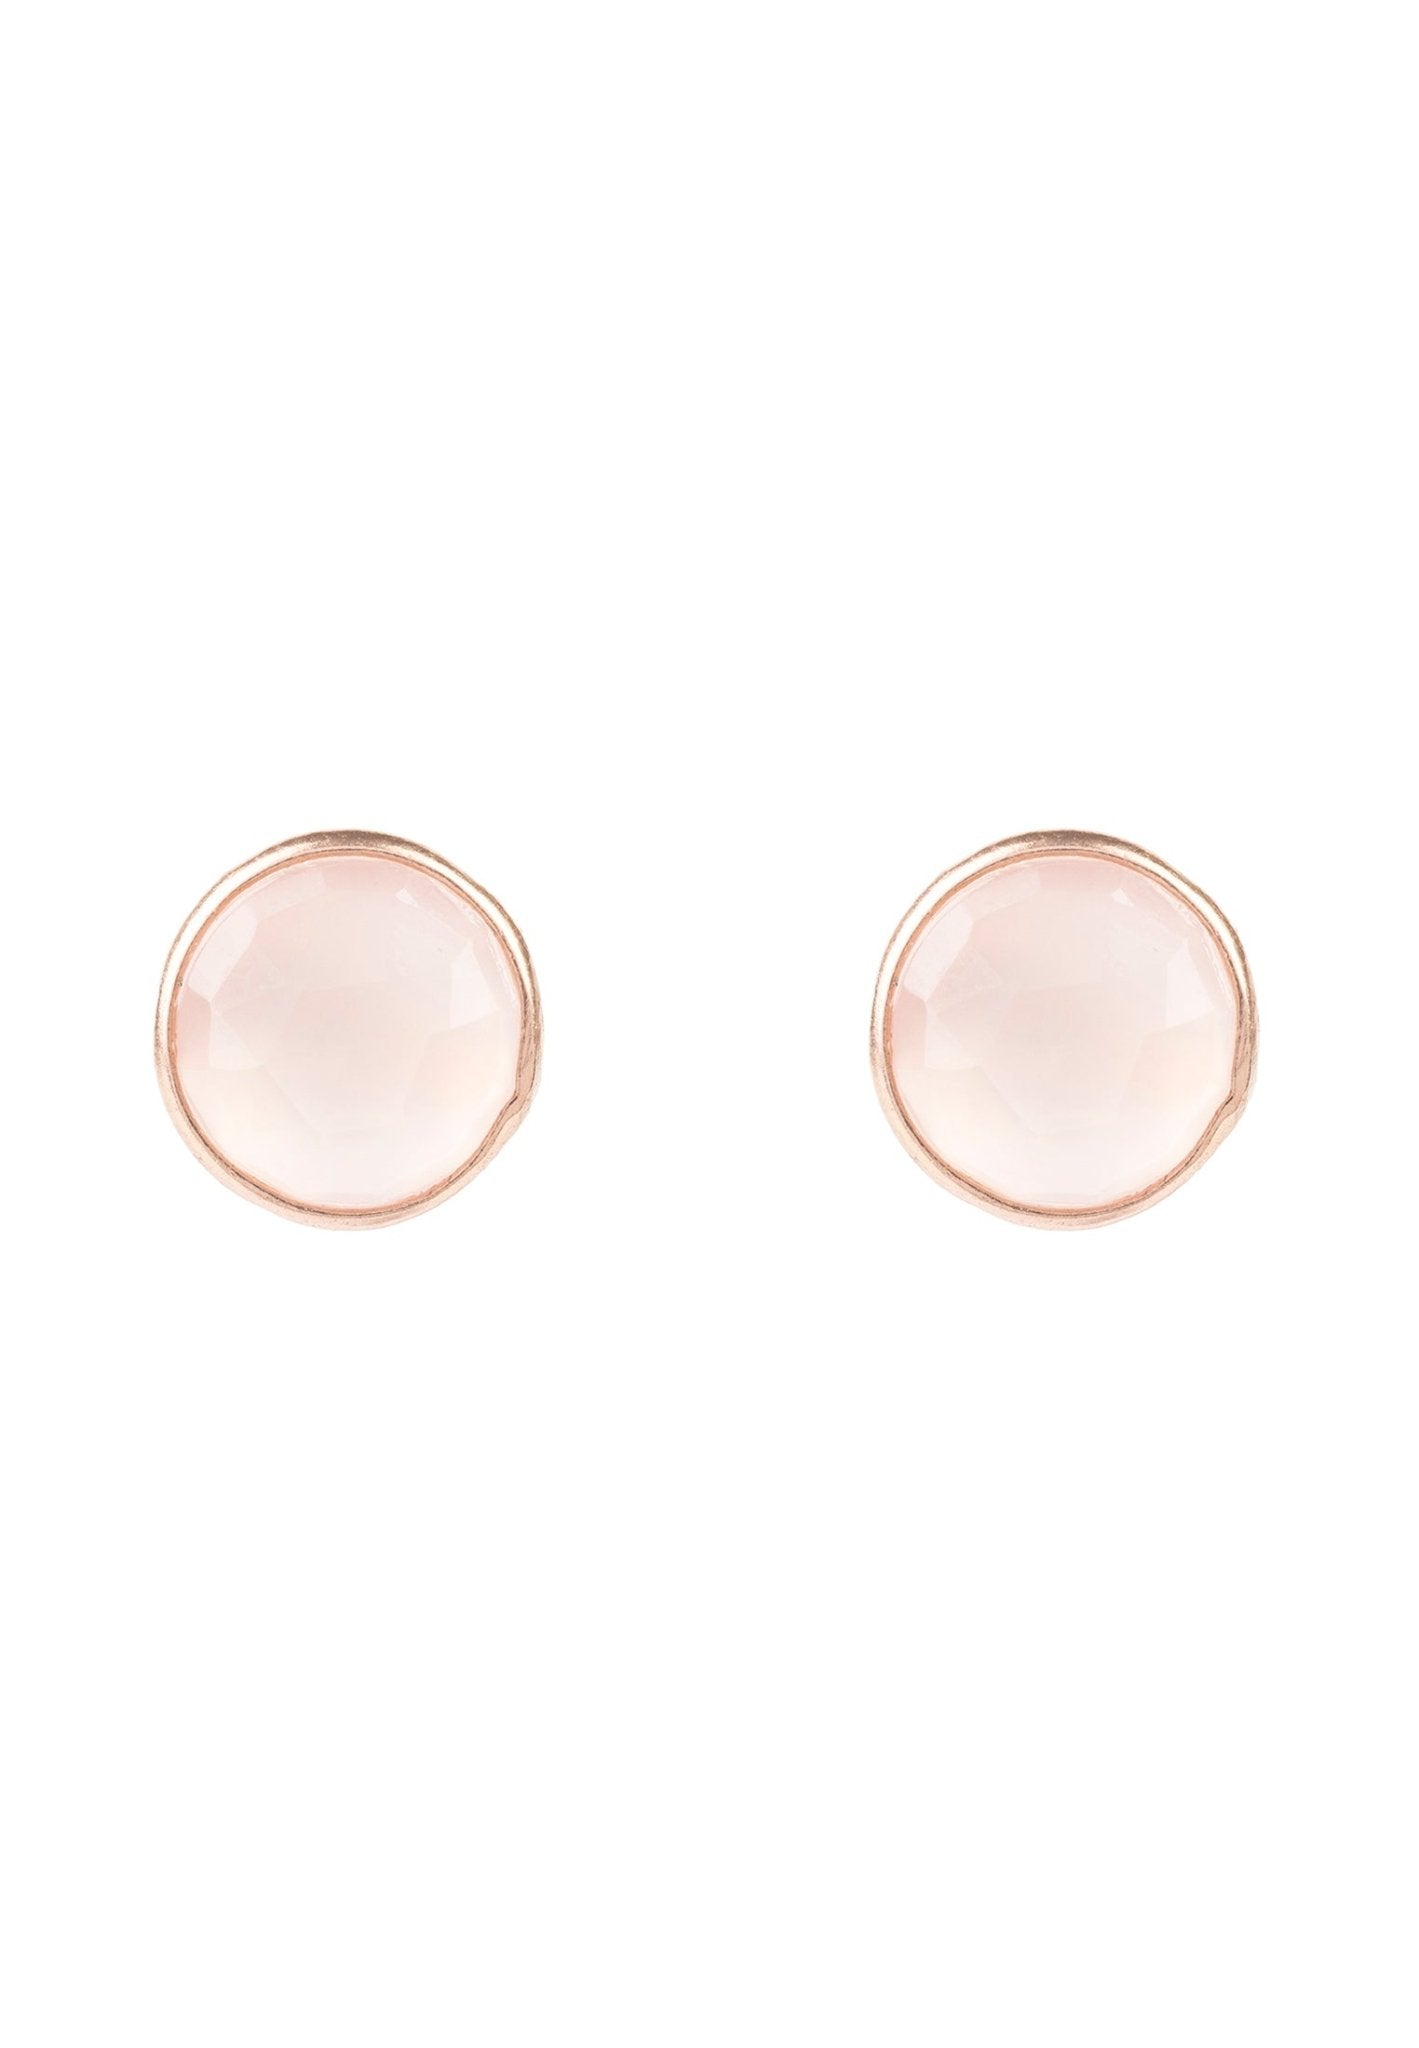 Medium Circle Gemstone Earrings Rosegold Rose Quartz - LATELITA Earrings